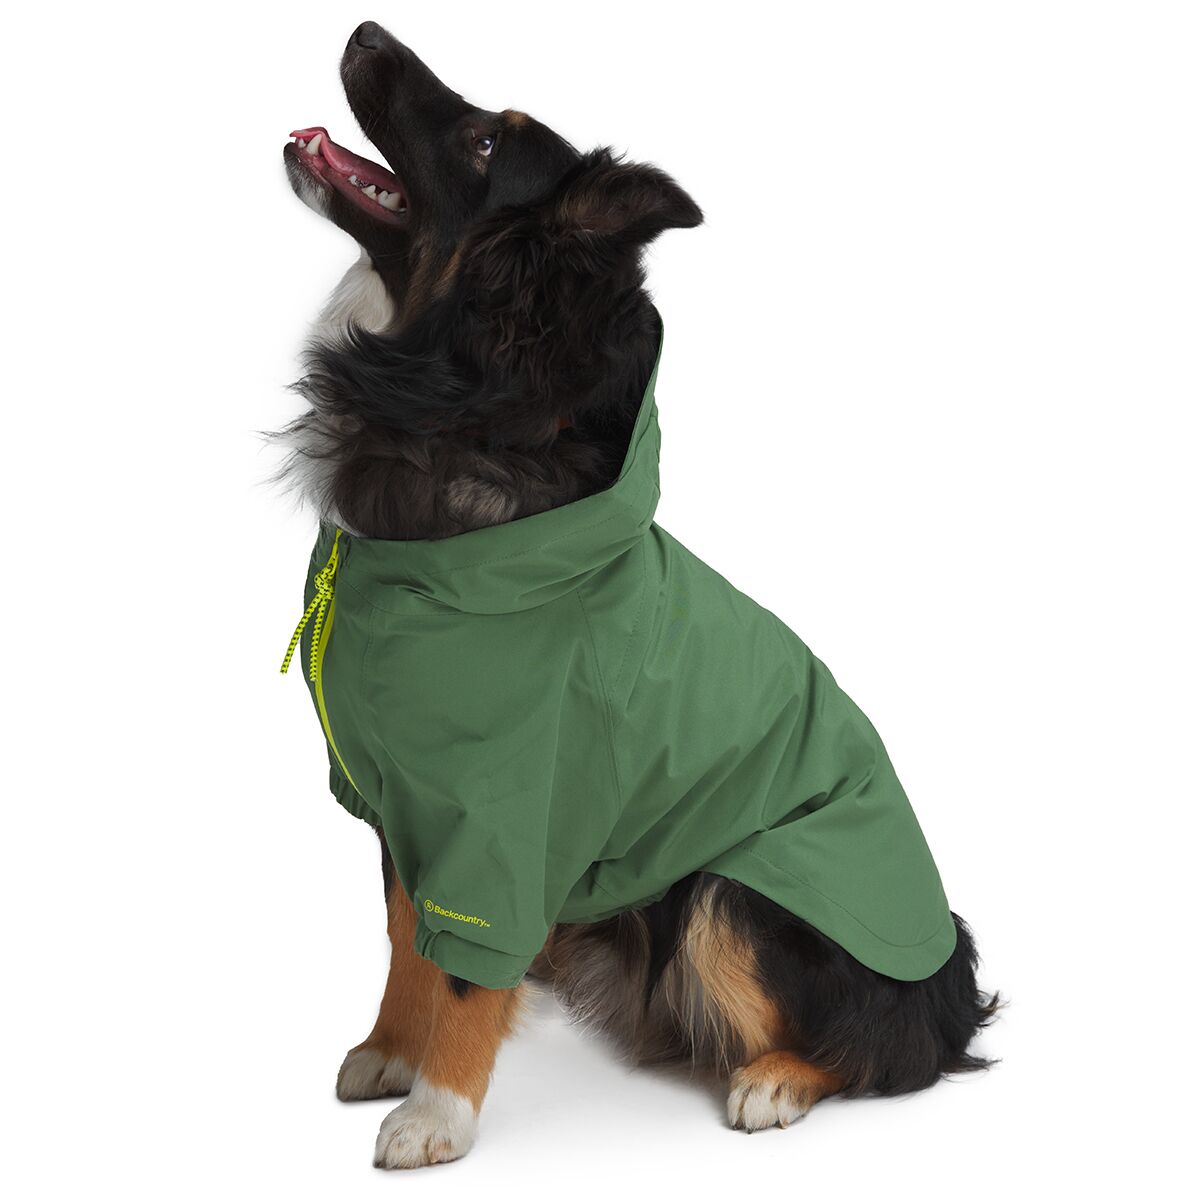 Backcountry x Petco The Dog Rain Jacket